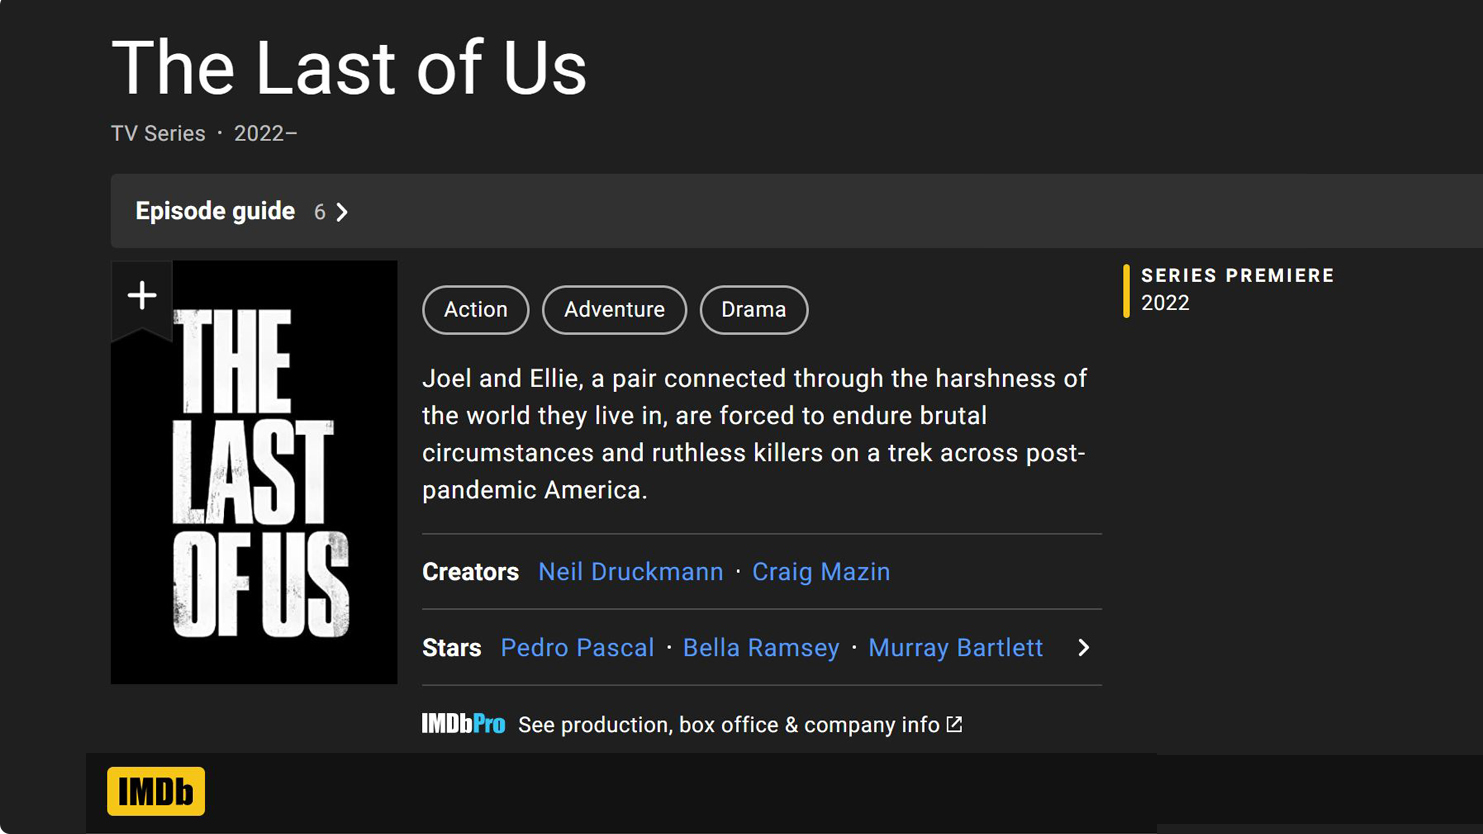 The Last of Us: Elenco em outras produções